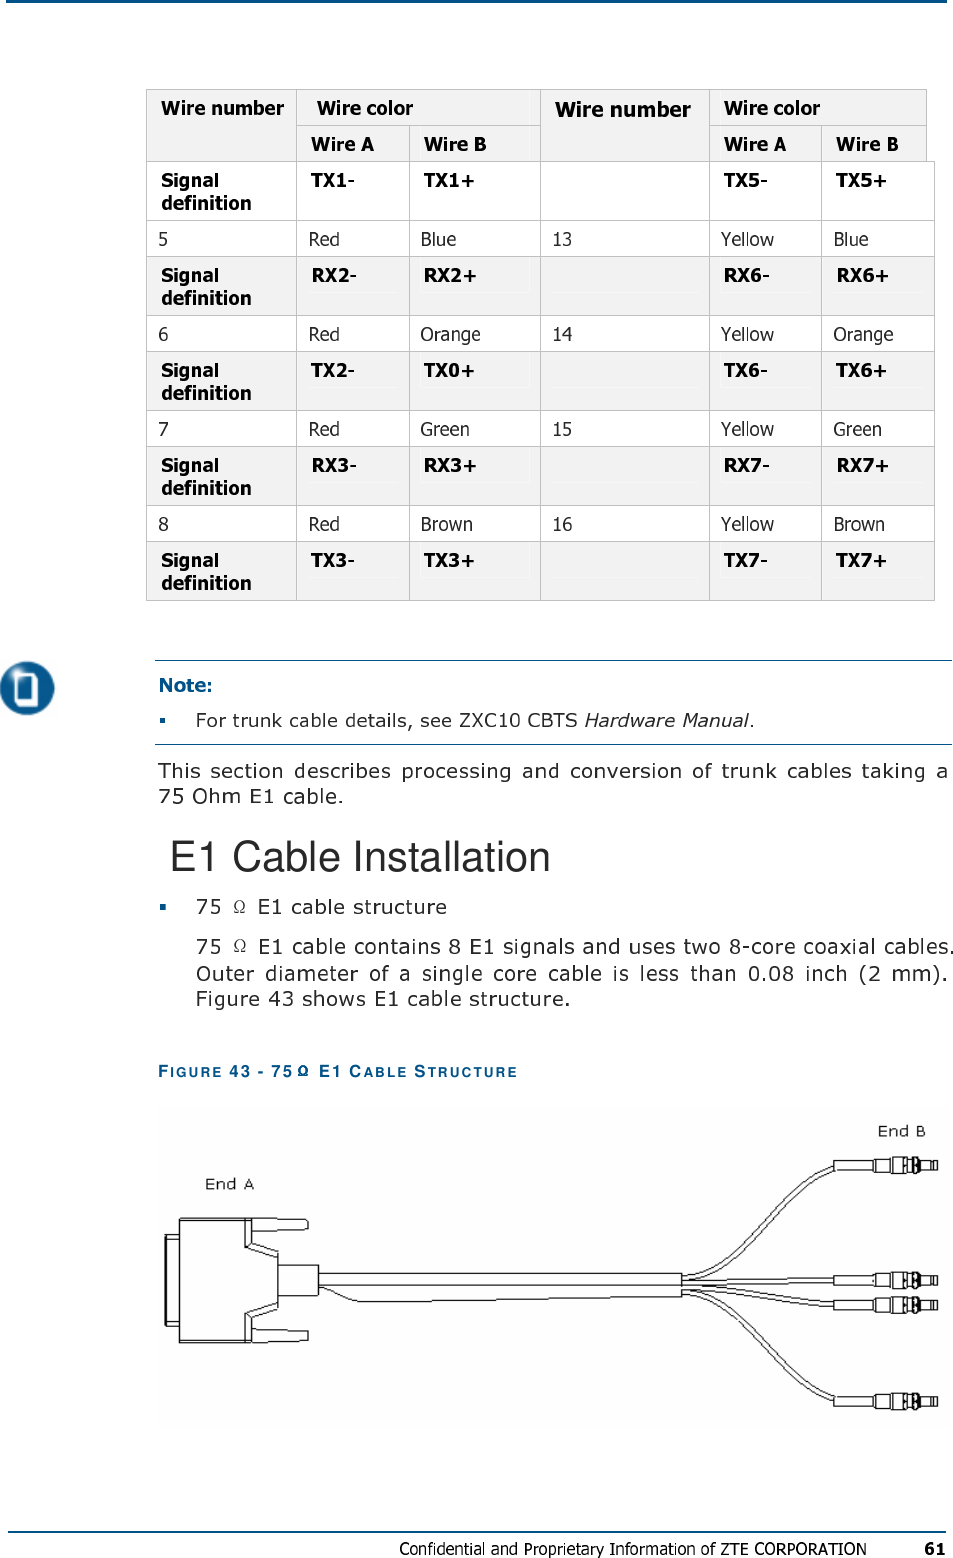    E1 Cable Installation   FIG U R E   43 - 75  E1 CABL E  STR U C TU R E   